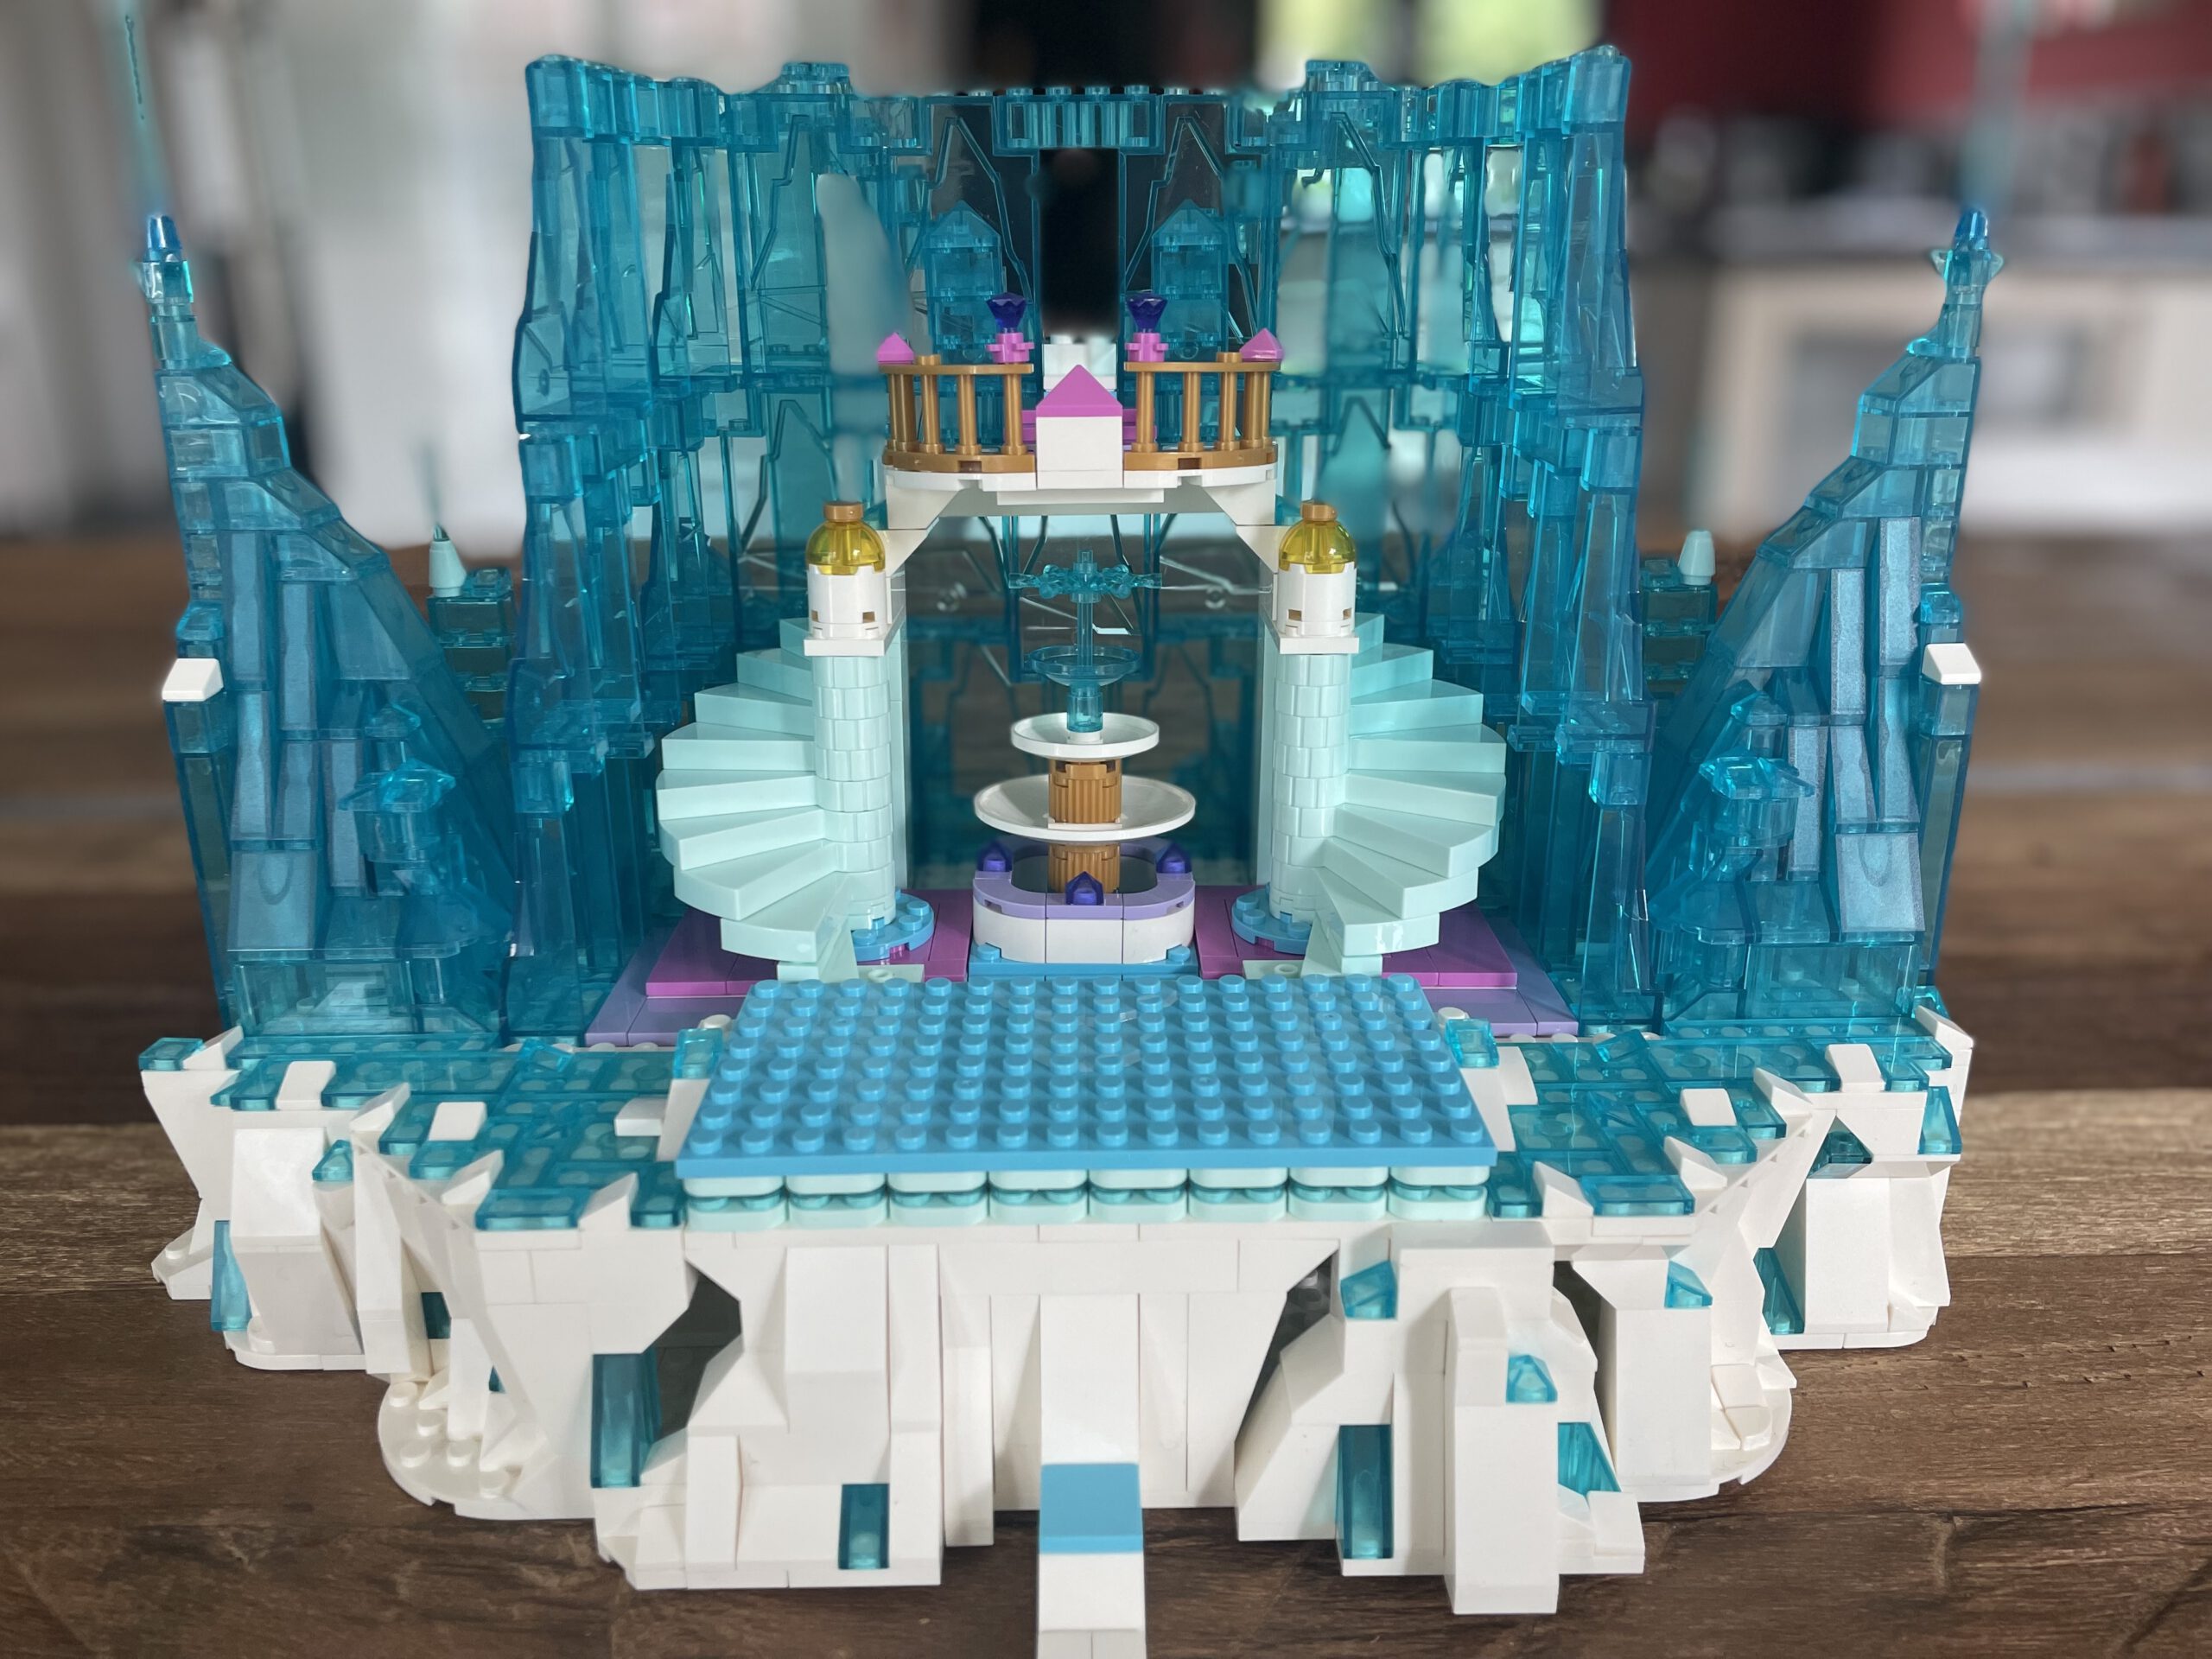 MJ 13002 Princess Ice Castle